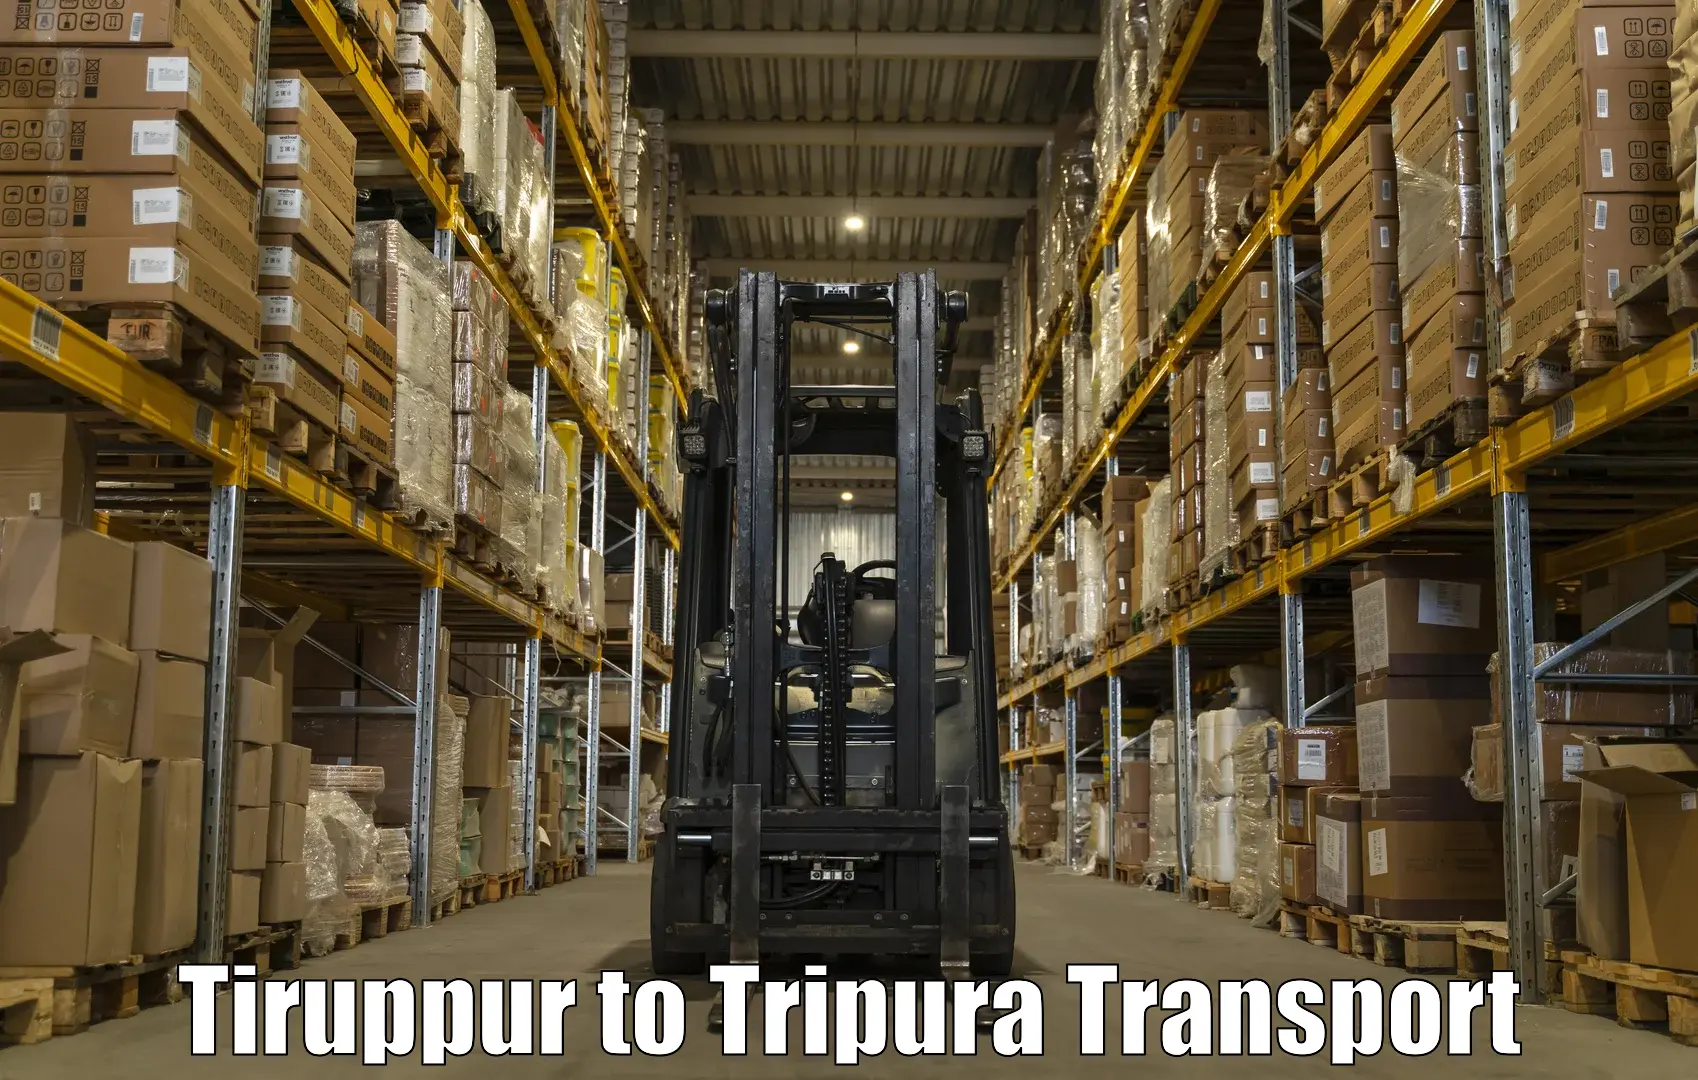 Intercity transport Tiruppur to Santirbazar